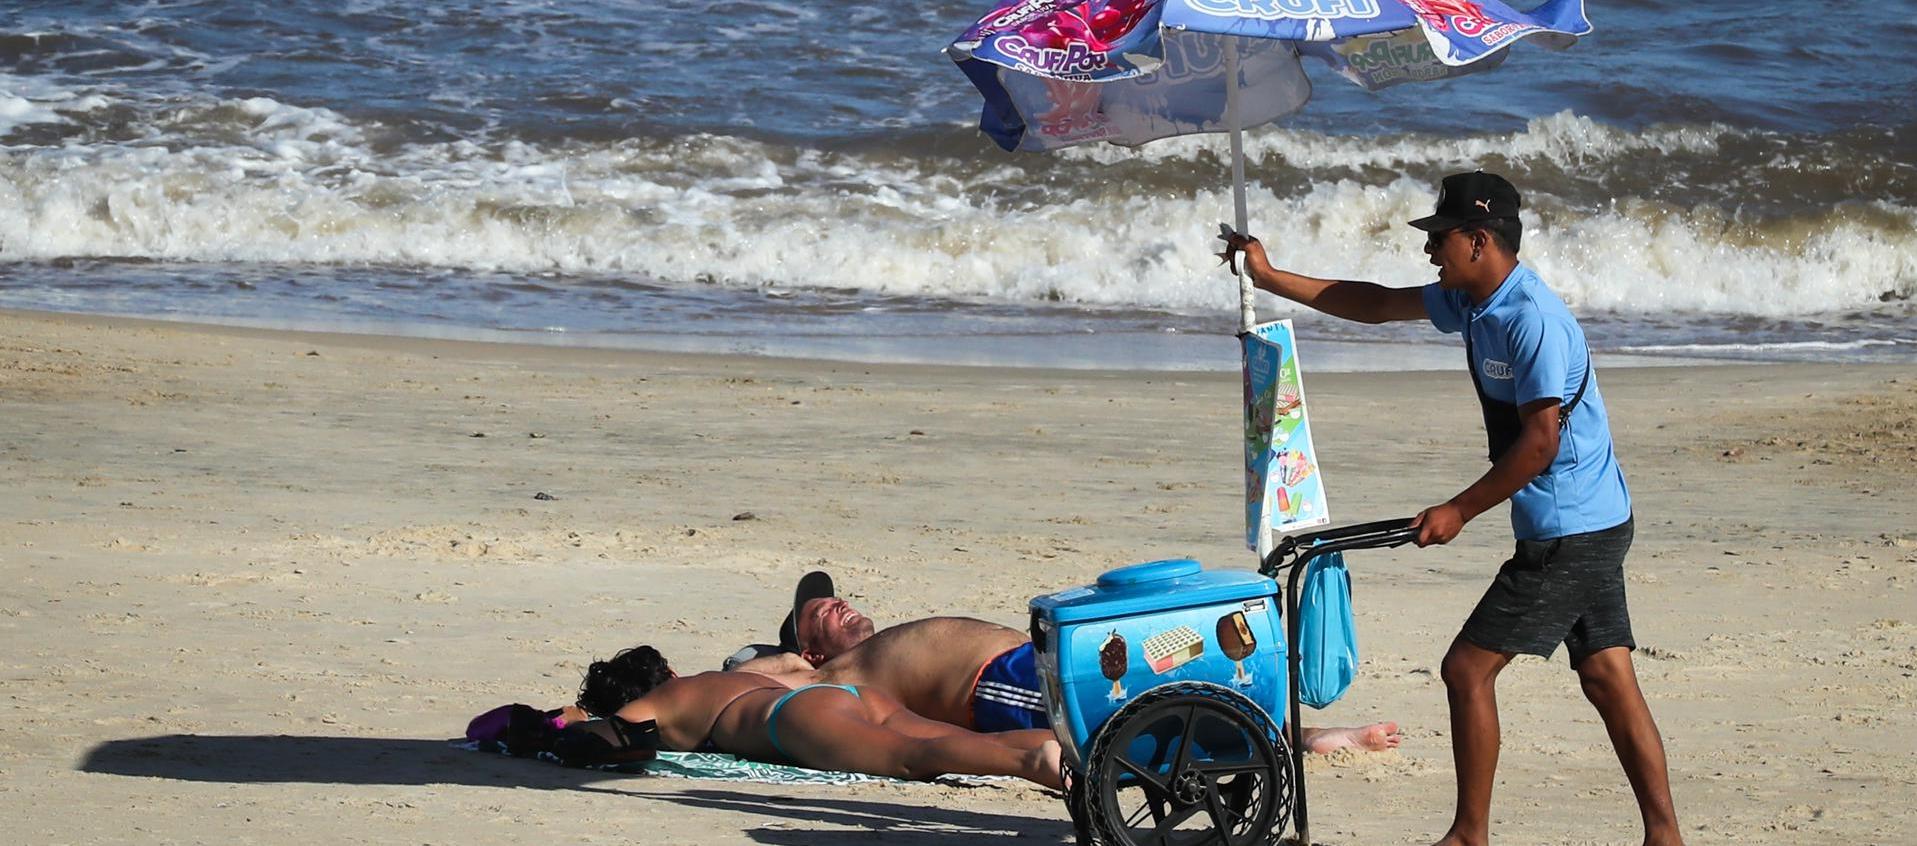 Un hombre vende helados en la Playa Pocitos de Montevideo durante una ola de calor.